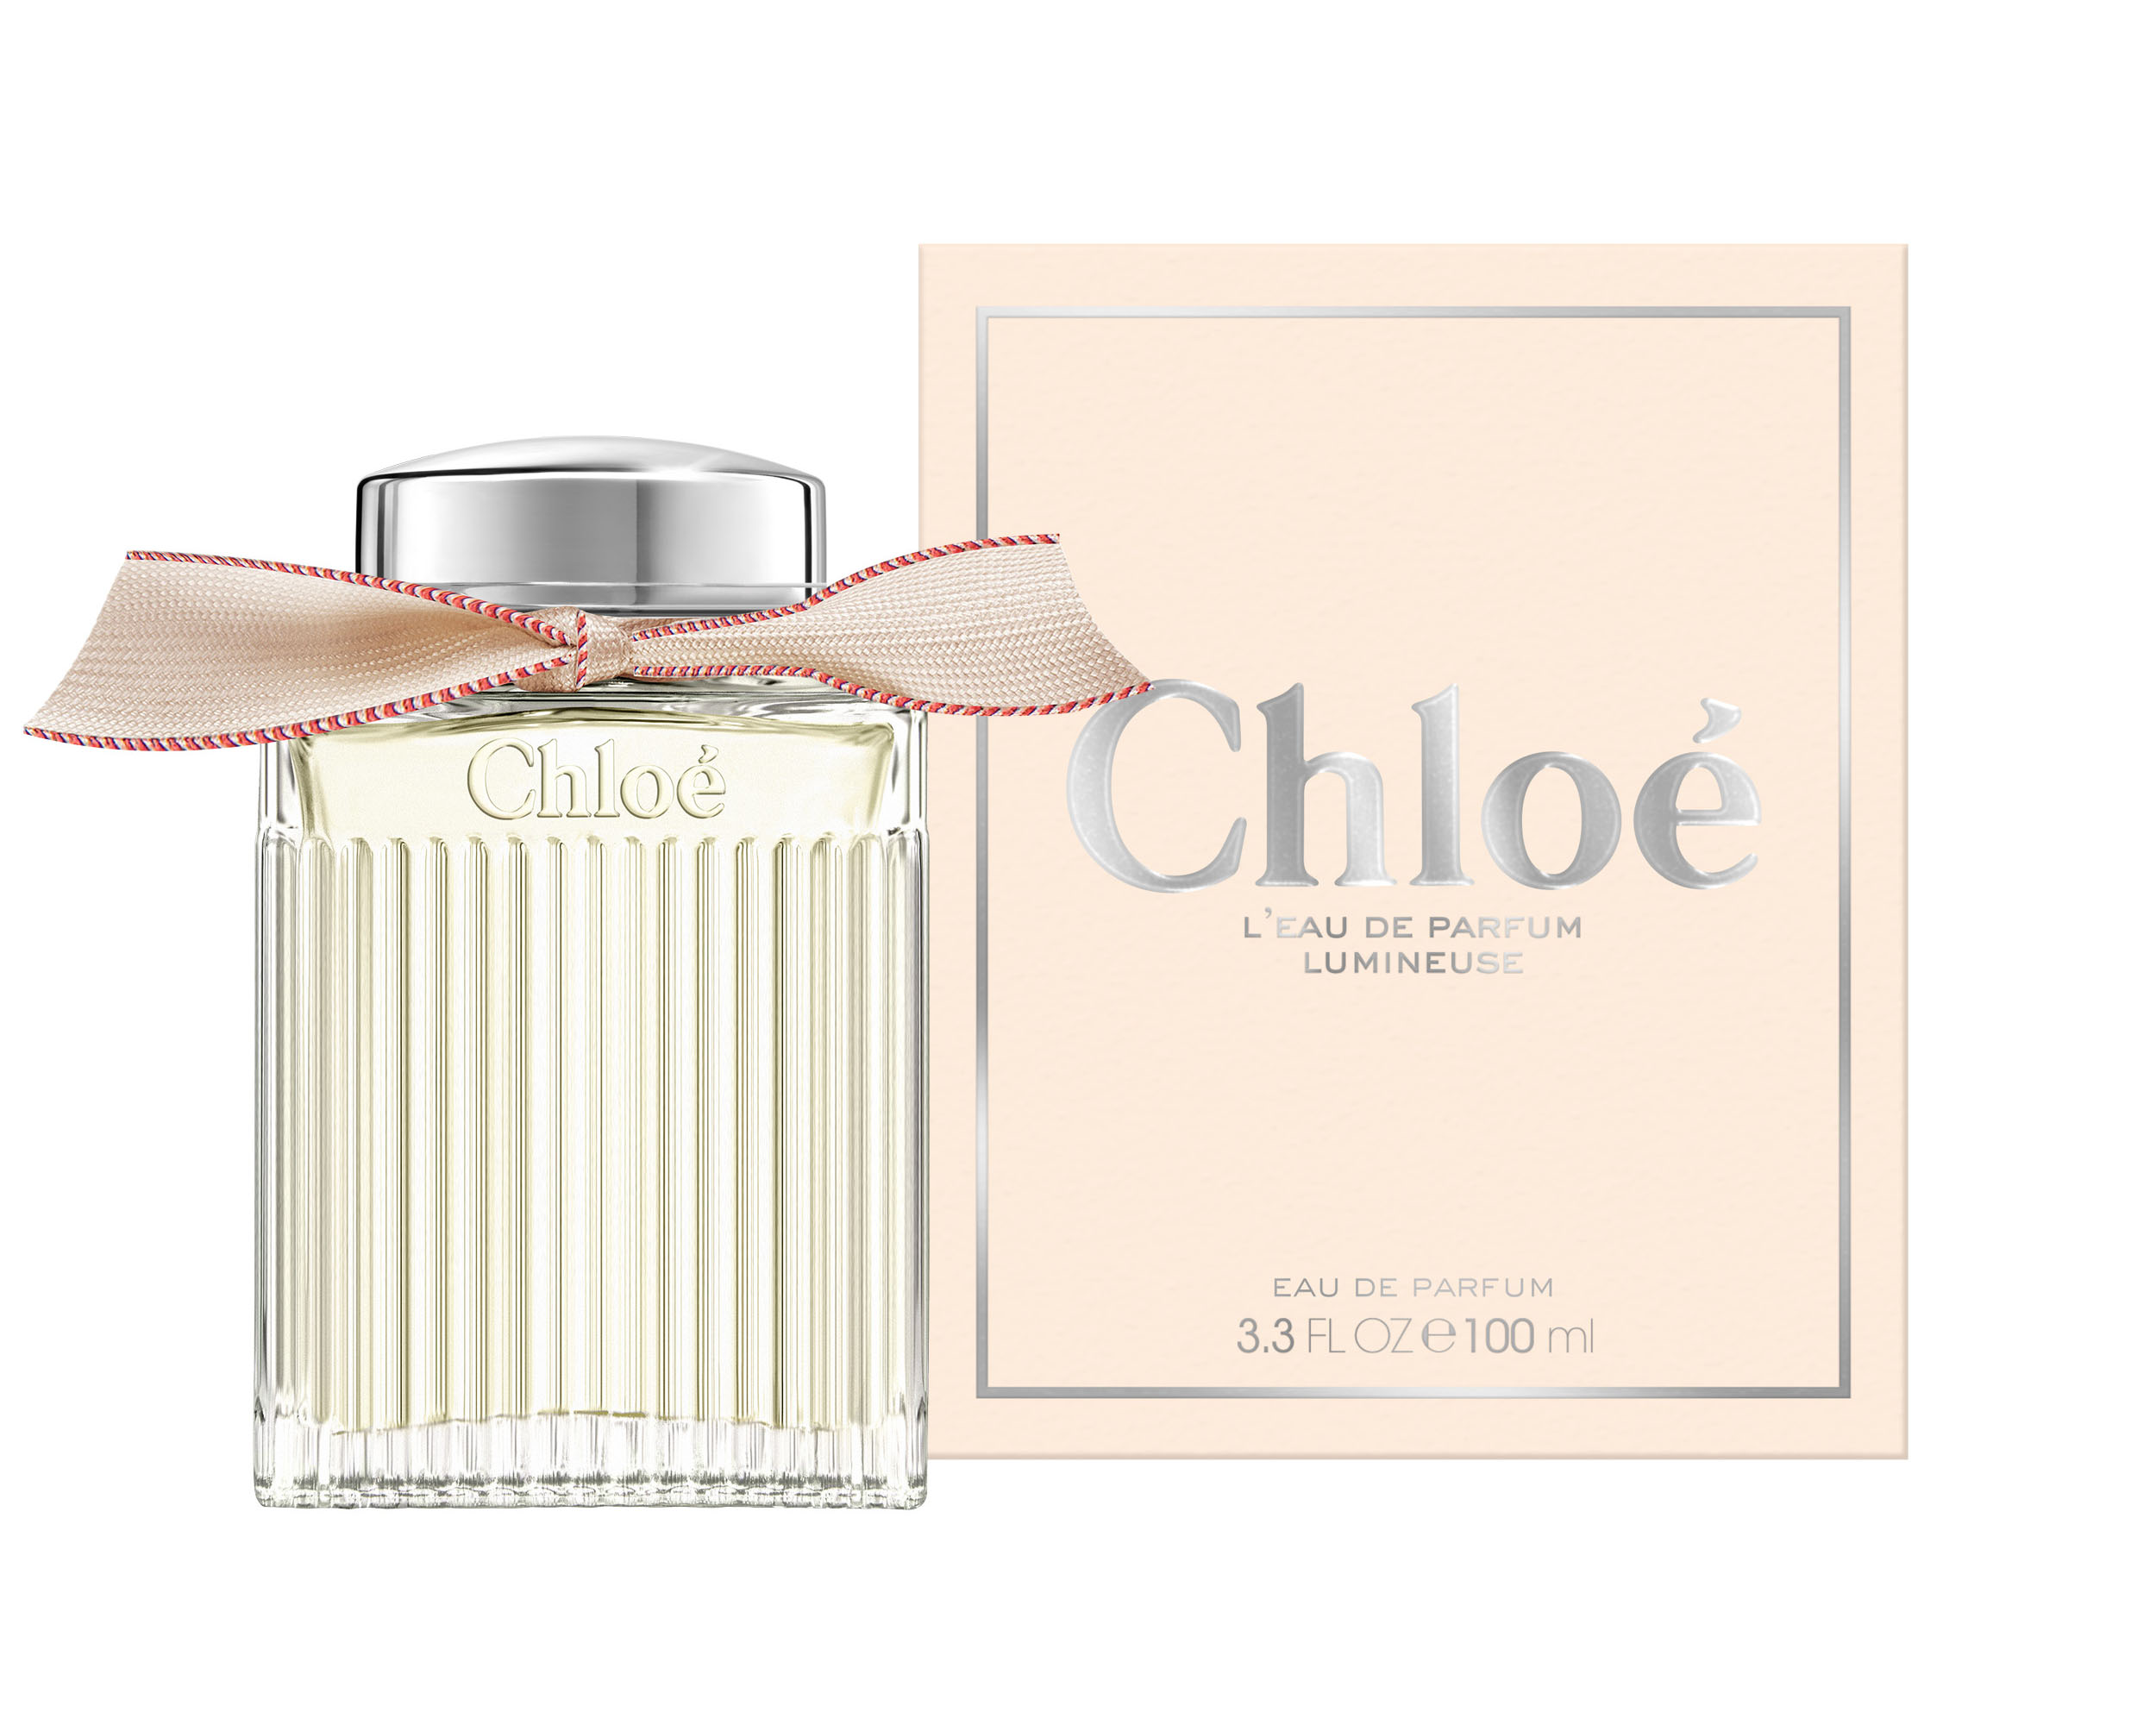 Chloé L'Eau de Parfum Lumineuse ~ Nuevas Fragancias